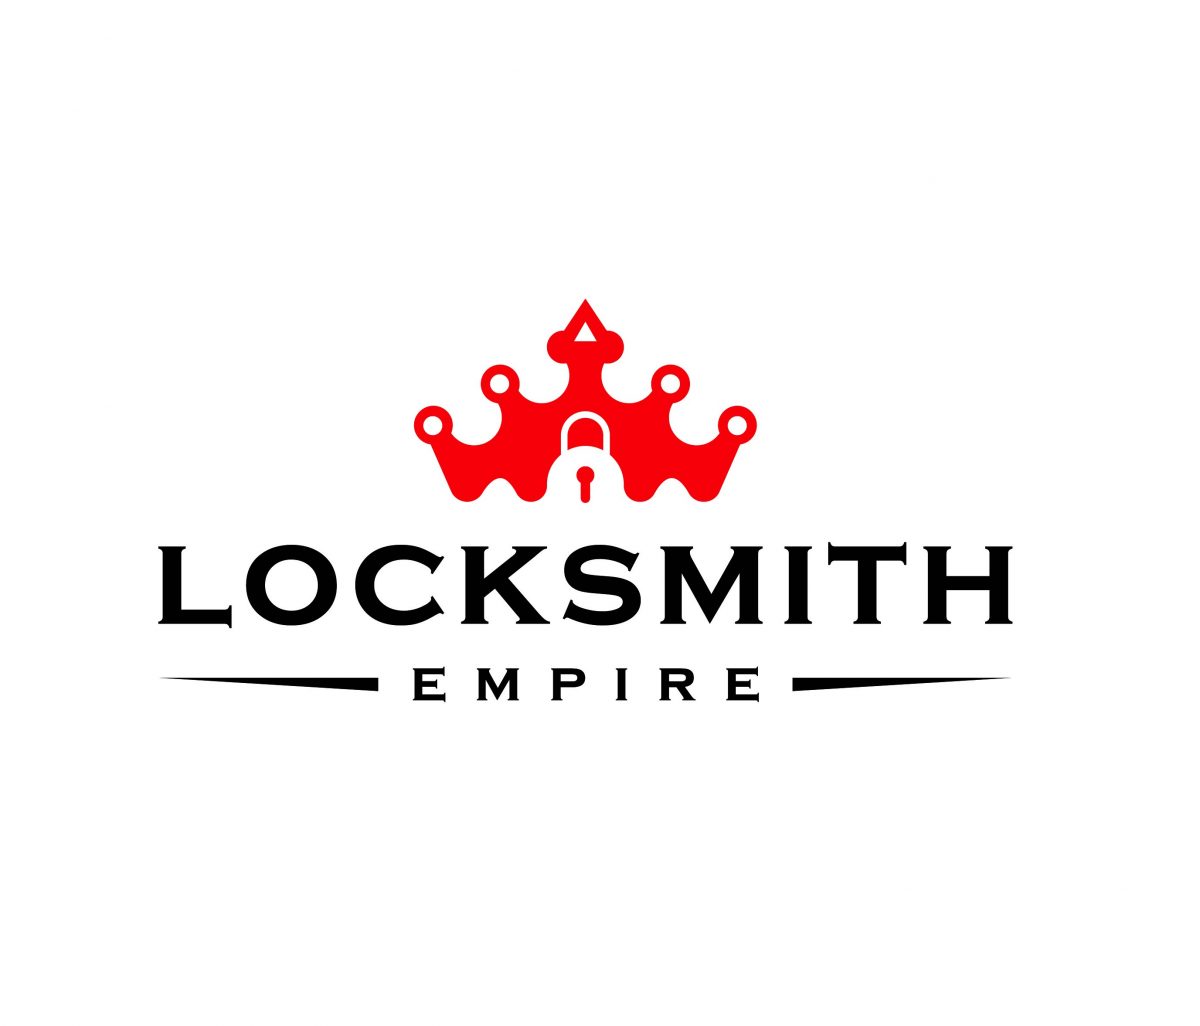 Locksmith-empire-logo